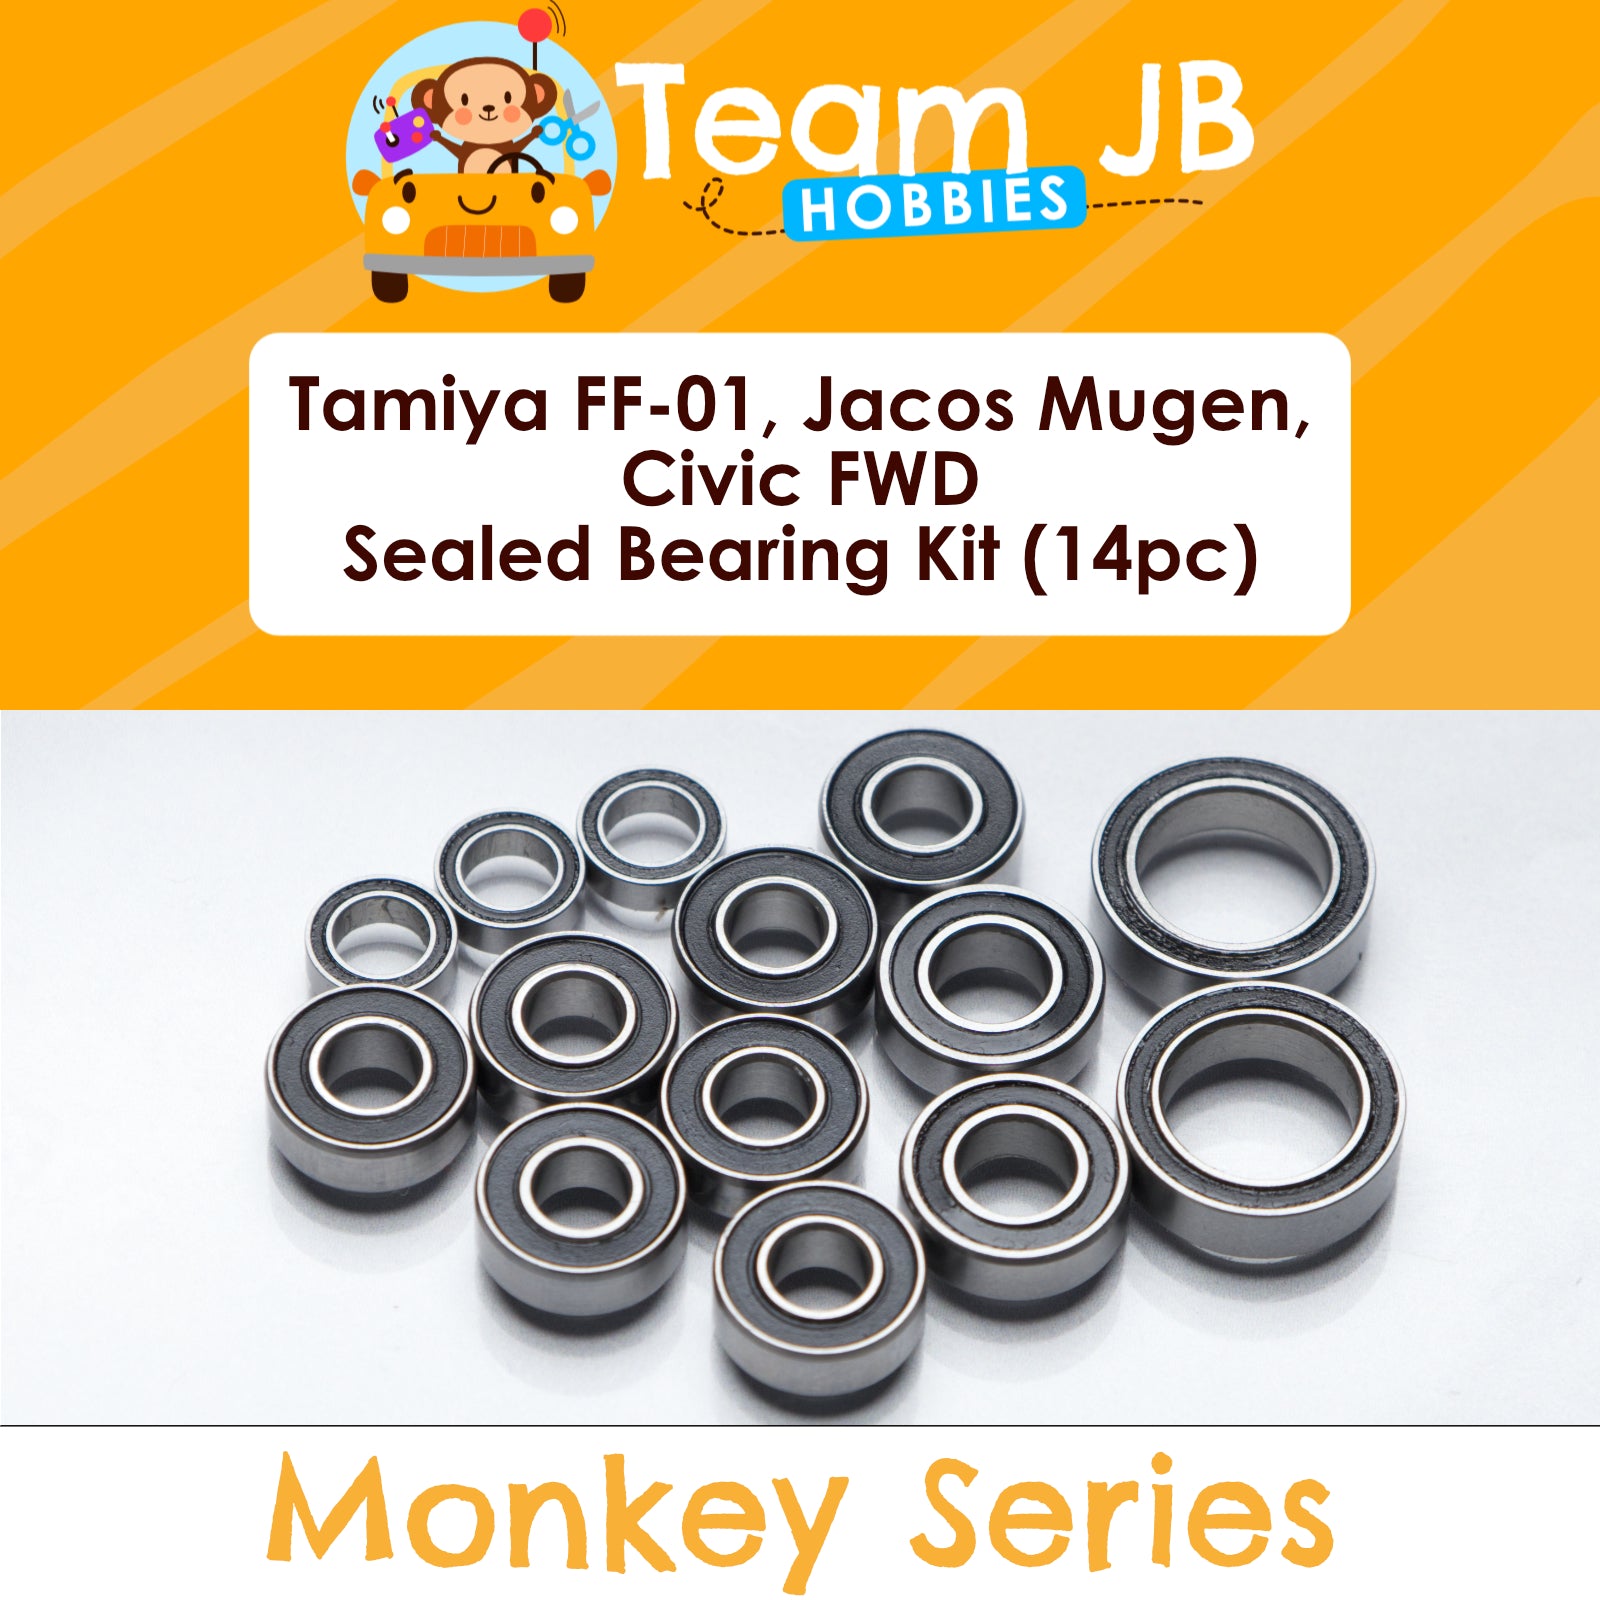 Tamiya FF-01, Jacos Mugen, Civic FWD - Sealed Bearing Kit